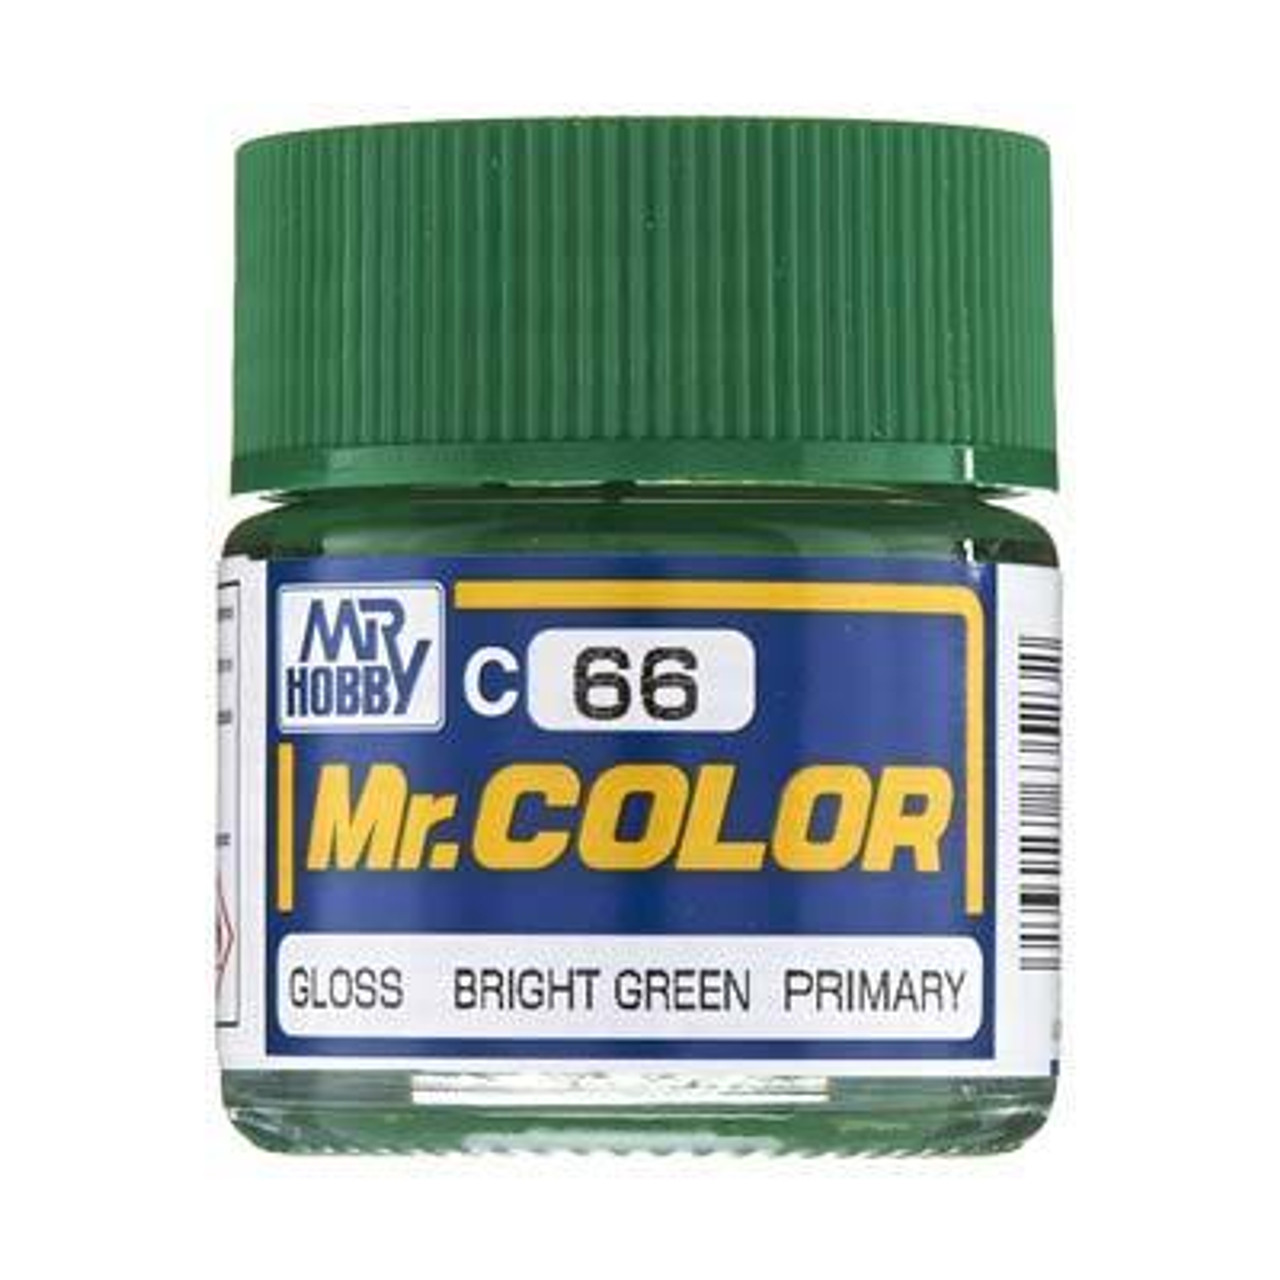 GNZC66 Gloss Bright Green 10ml , GSI Mr. Color